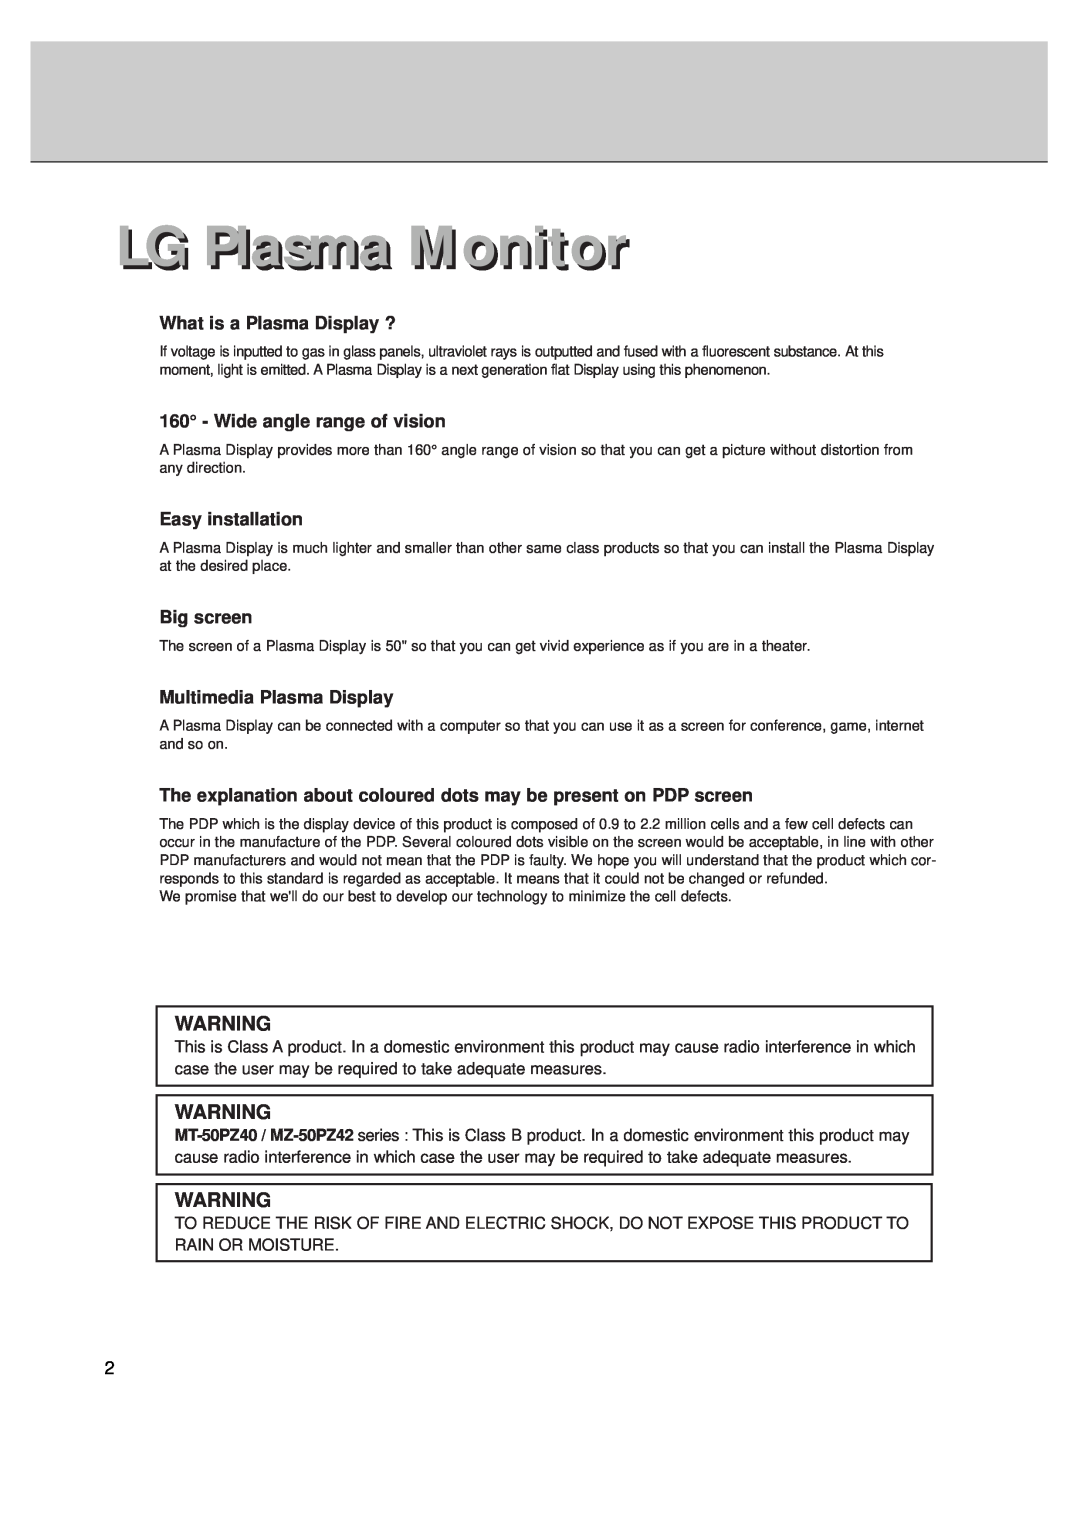 LG Electronics MT-50PZ40, MT-50PZ41, MT-50PZ43S, MZ-50PZ42, MZ-50PZ43 LG Plasma Monitor, What is a Plasma Display ? 